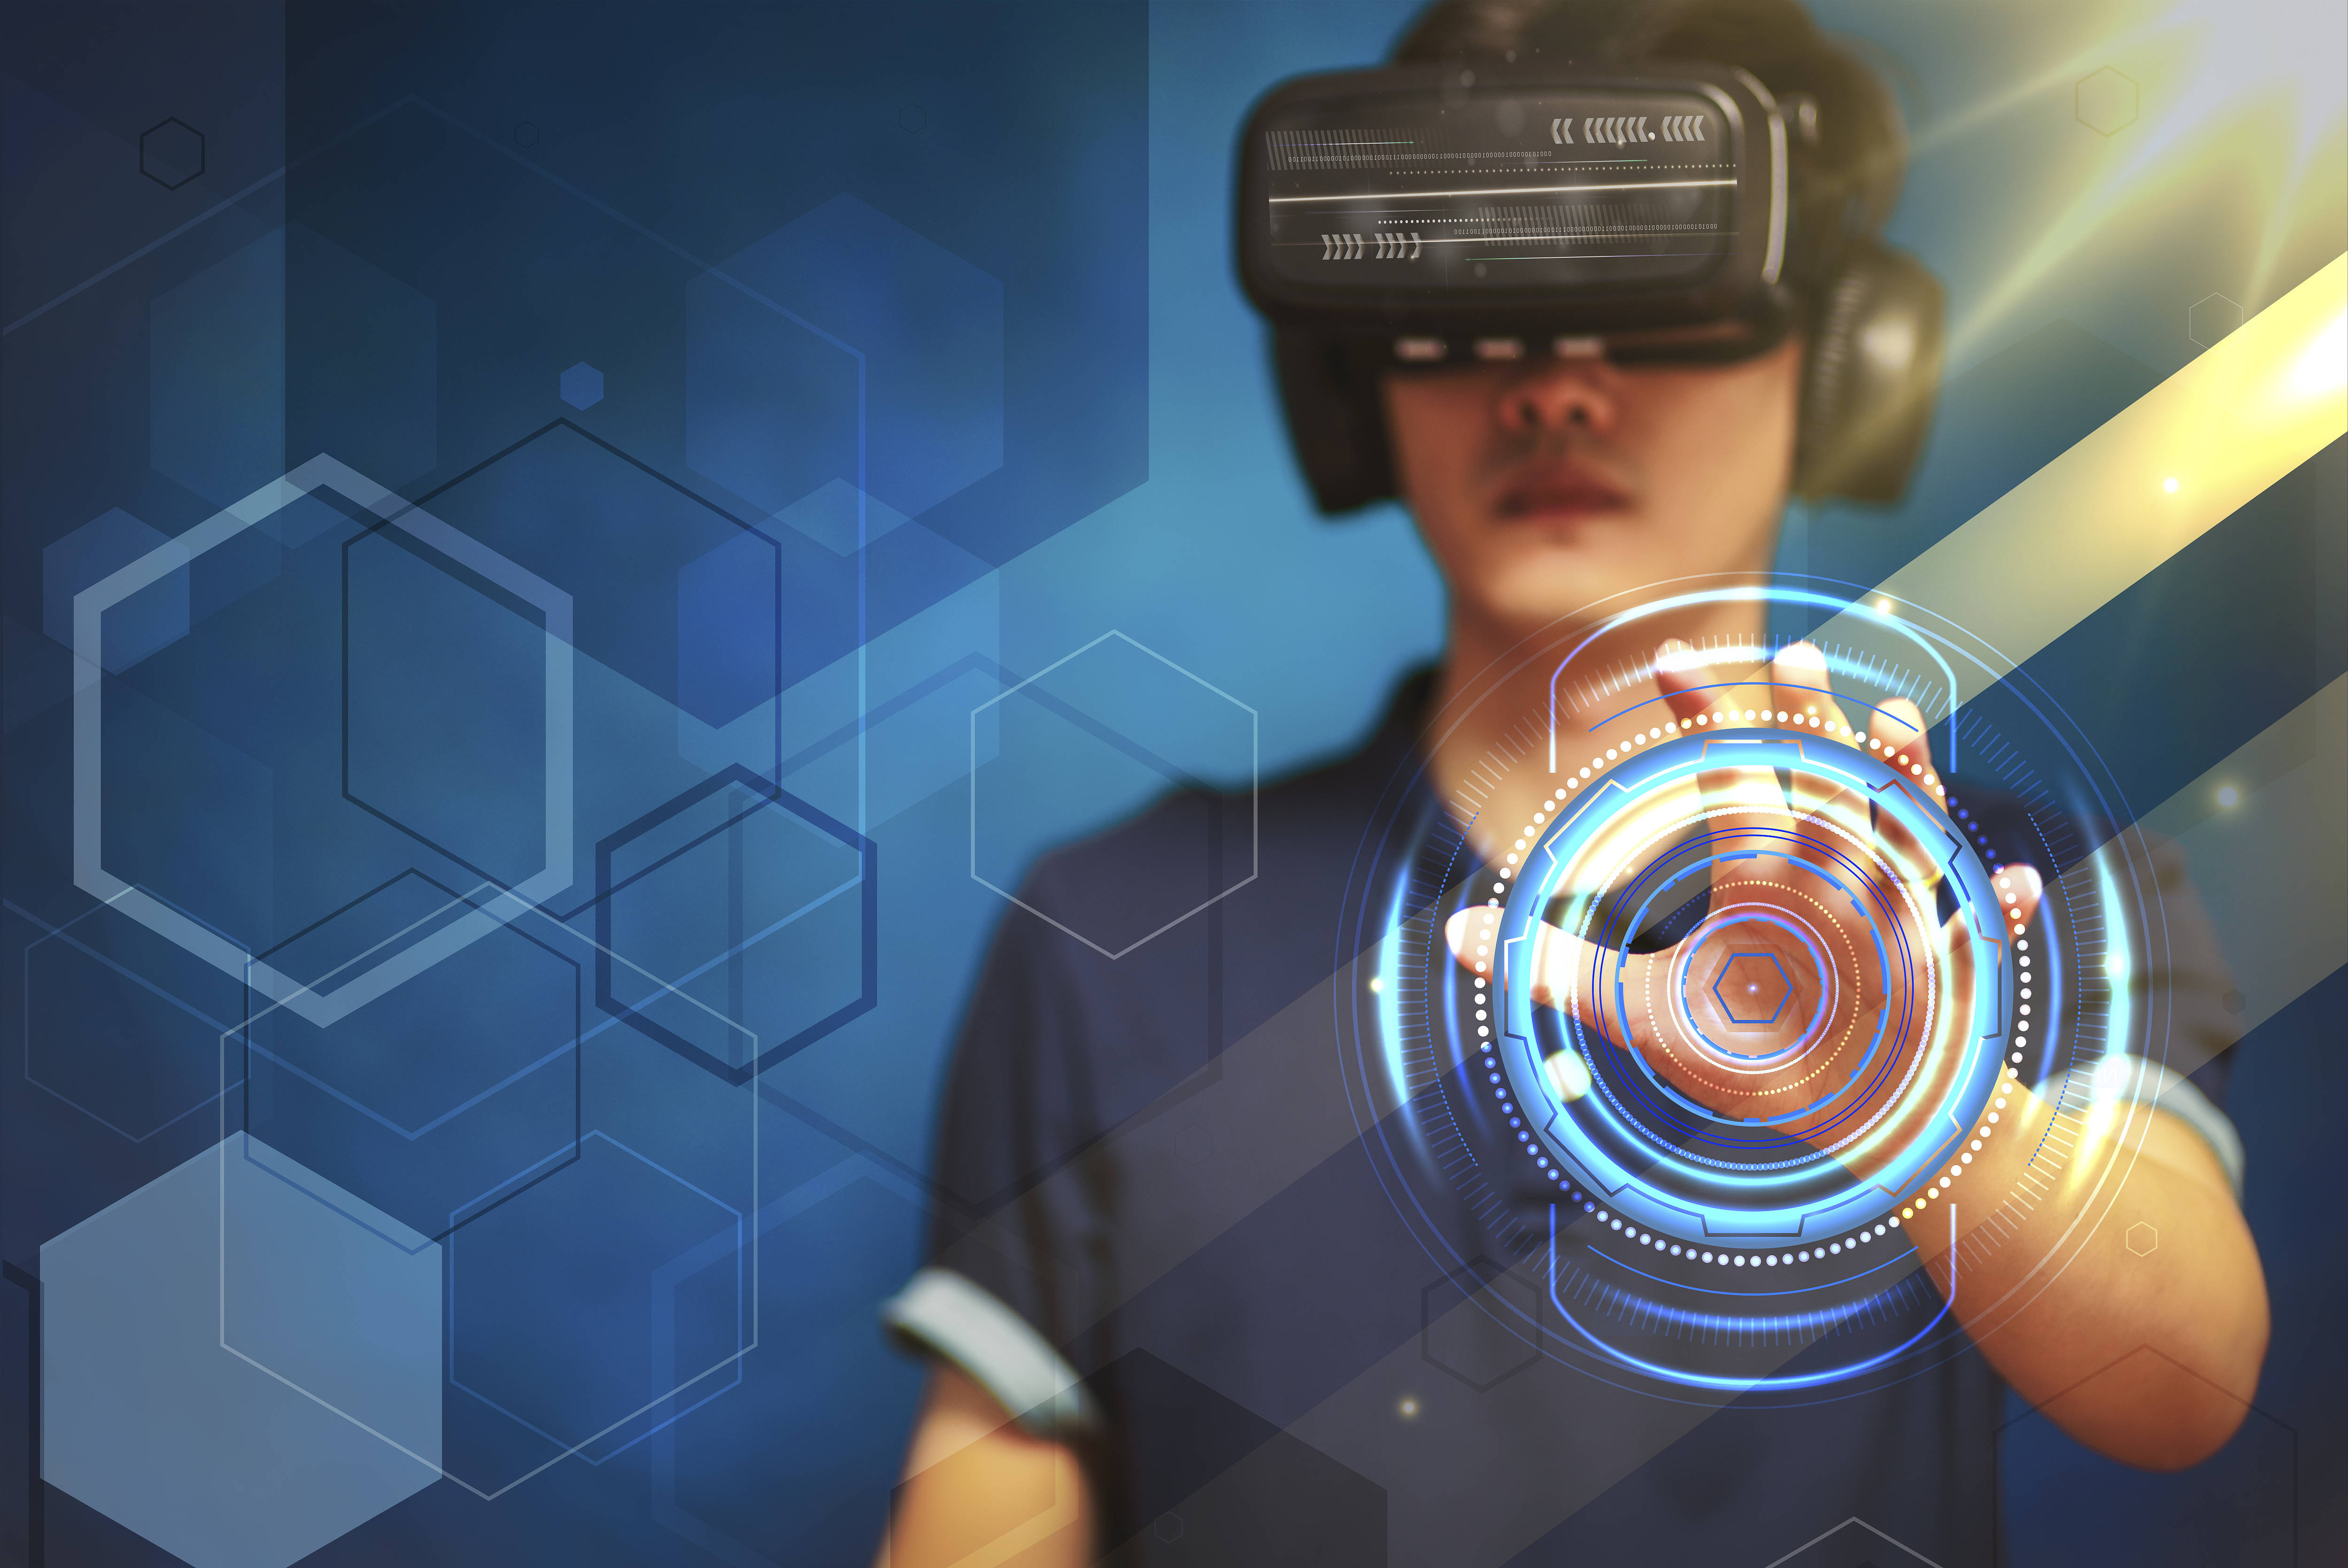 图片展示一位佩戴虚拟现实头盔的人，面前出现未来科技风格的虚拟界面，充满科幻感，可能在进行交互操作。